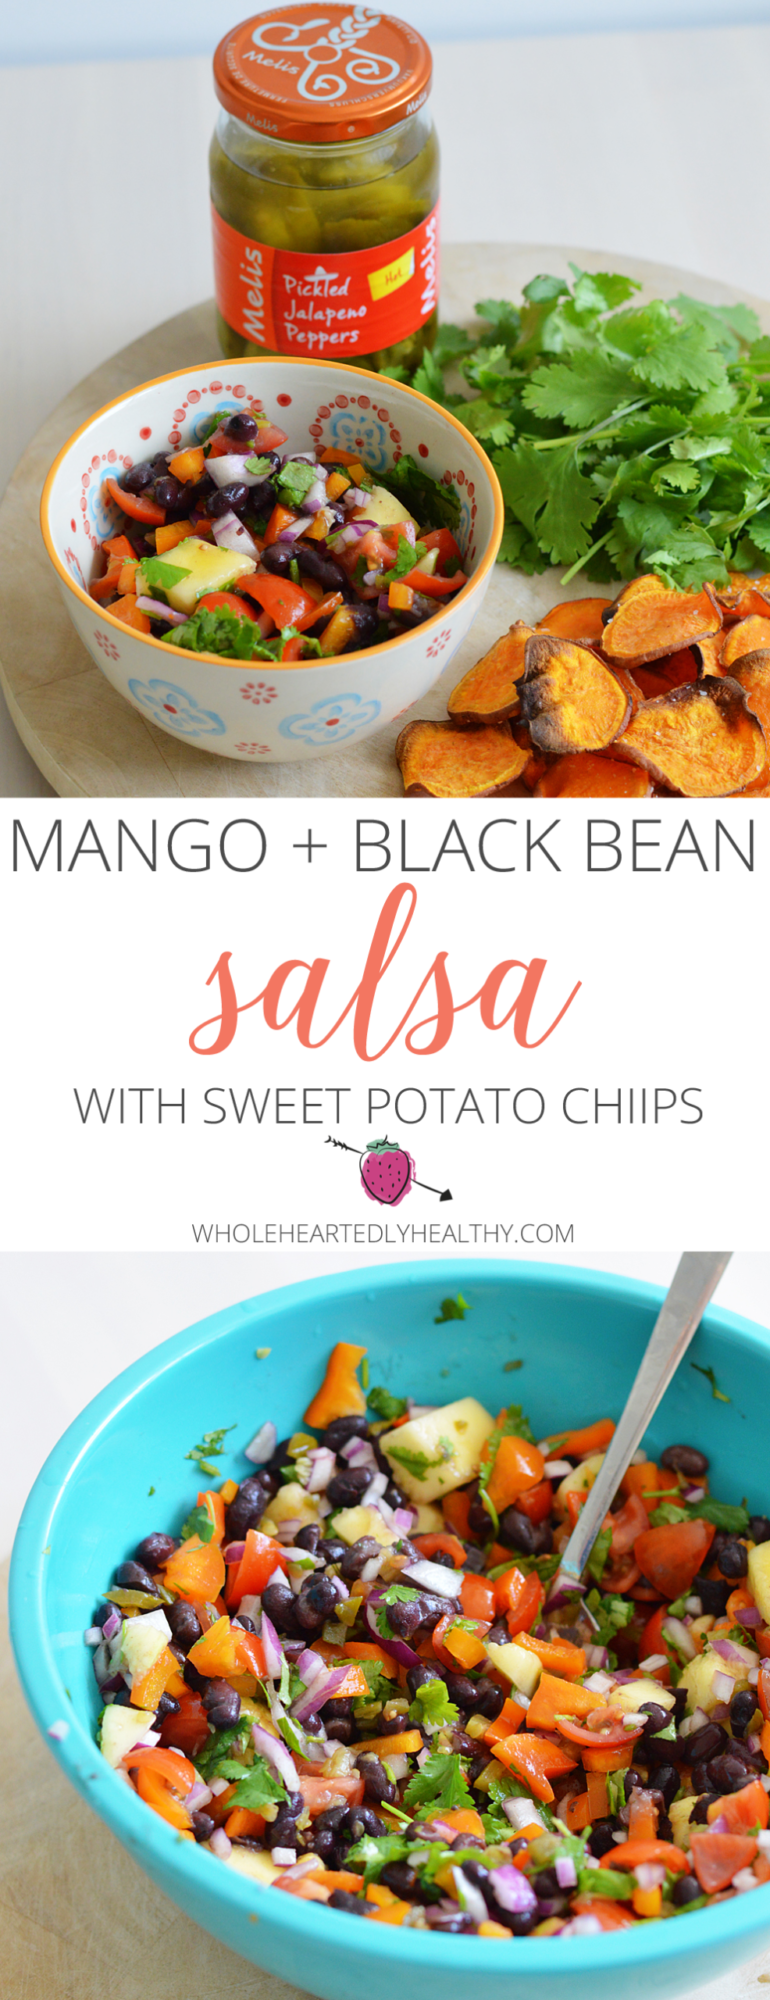 Mango and black bean salsa